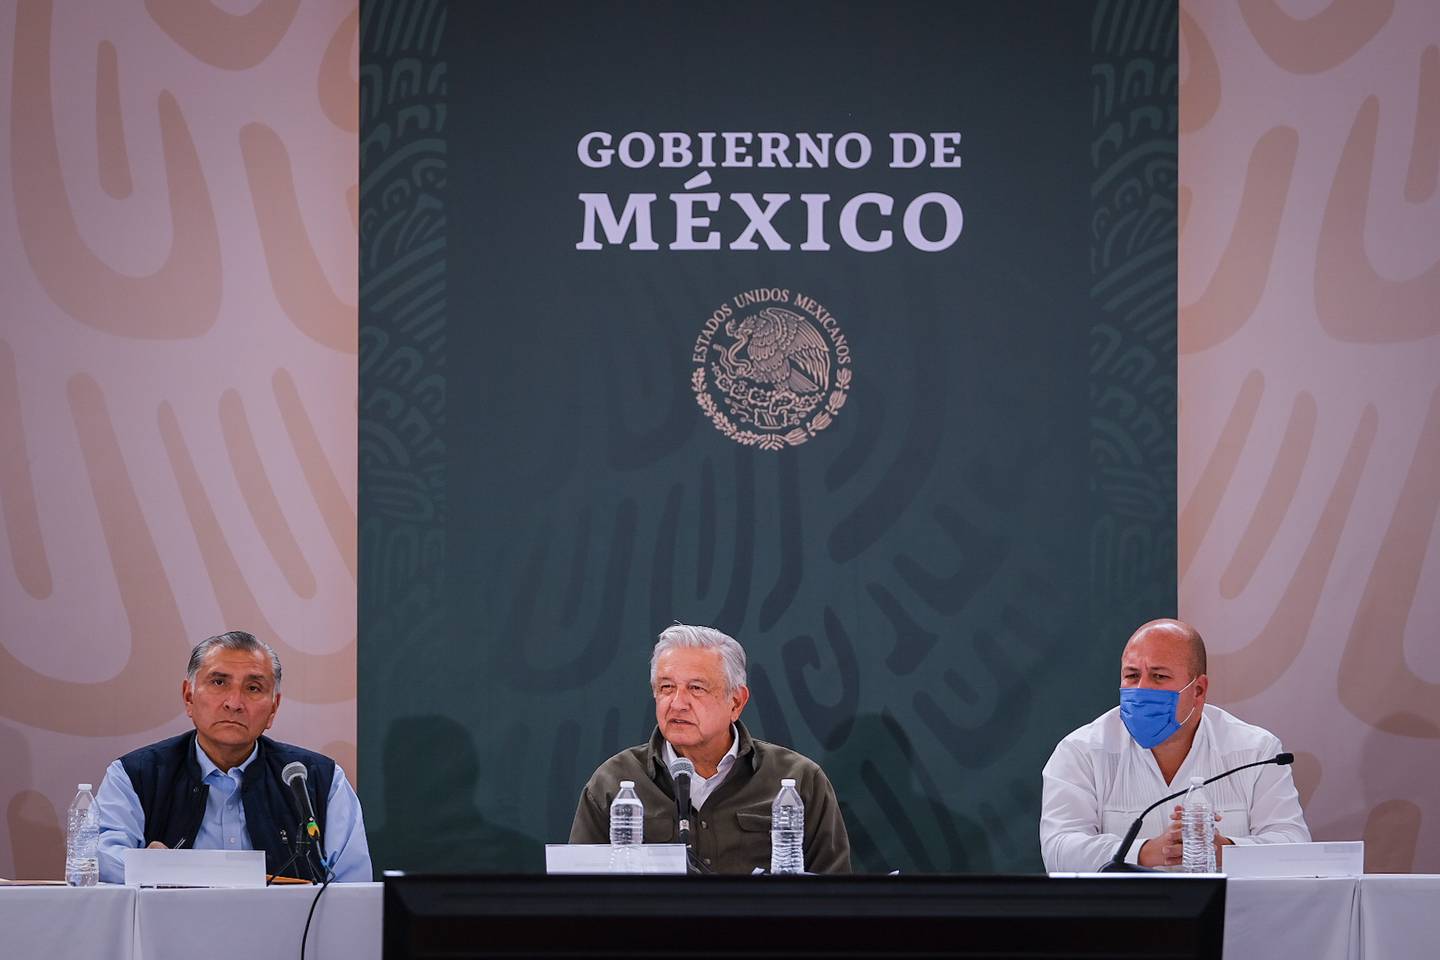 El presidente de México, Andrés Manuel López Obrador, acudió acompañado de todo su gabinete.